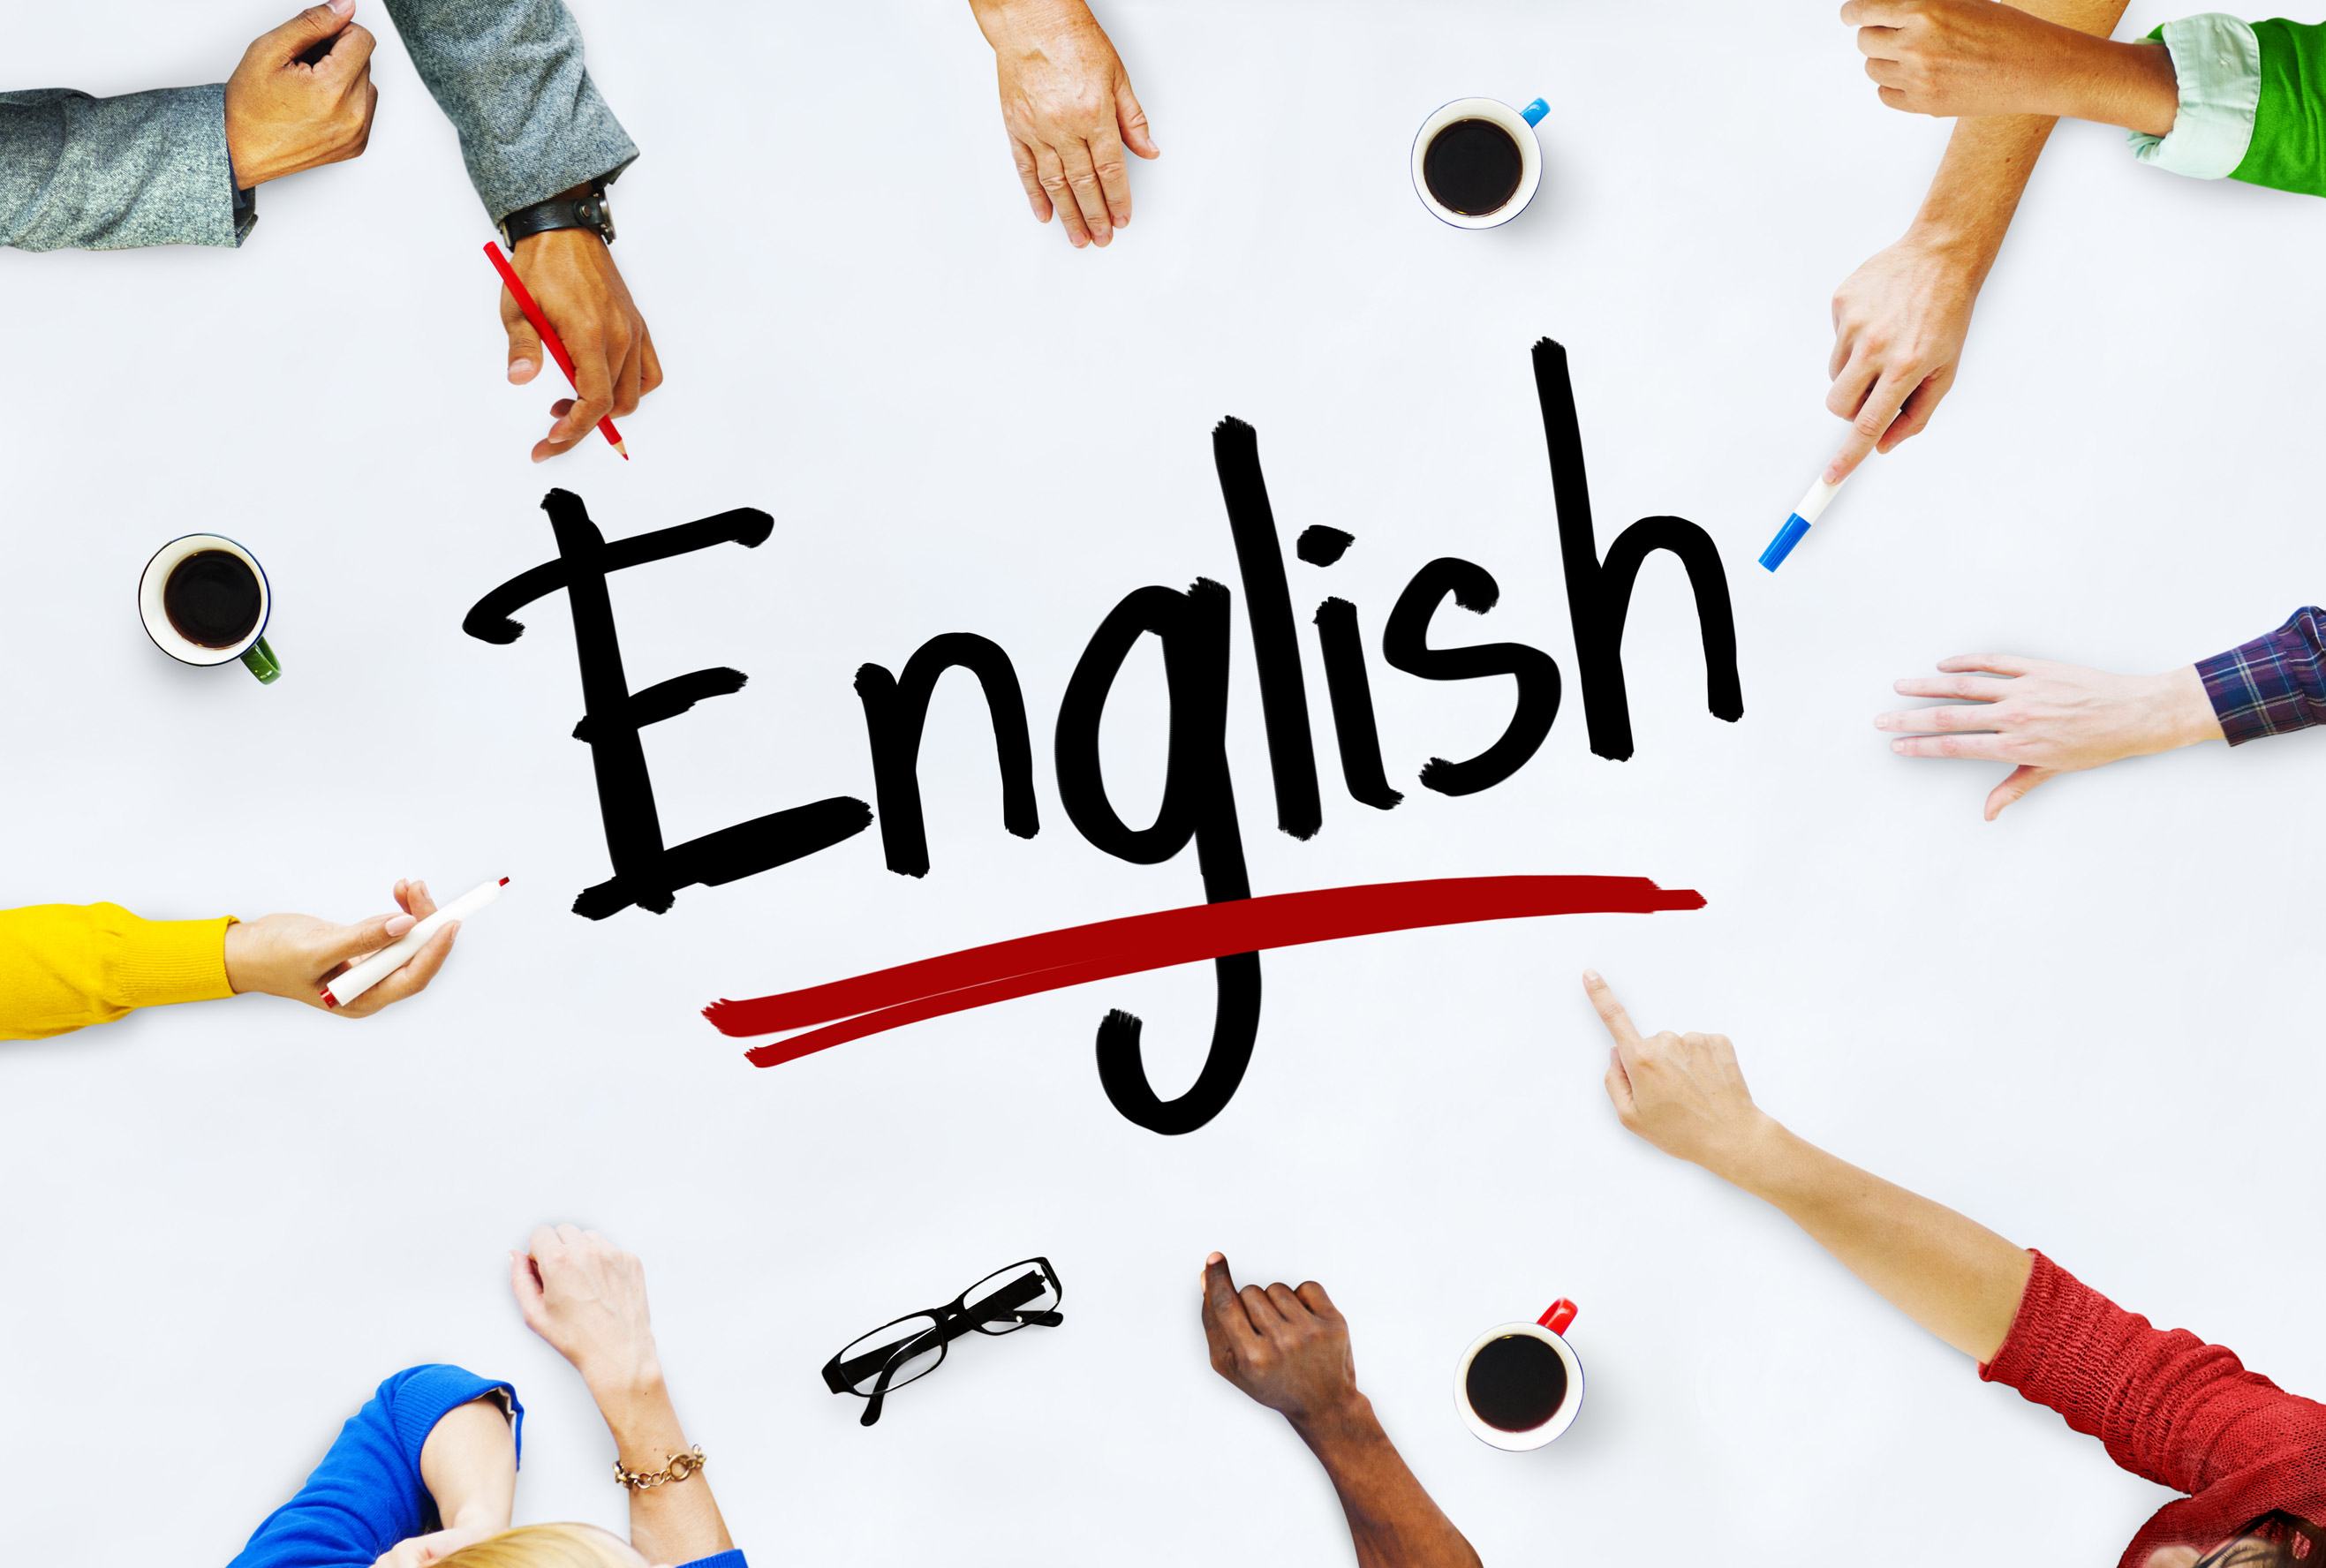 этом ufirst курсы английского для д...4.825english language school отзывы может